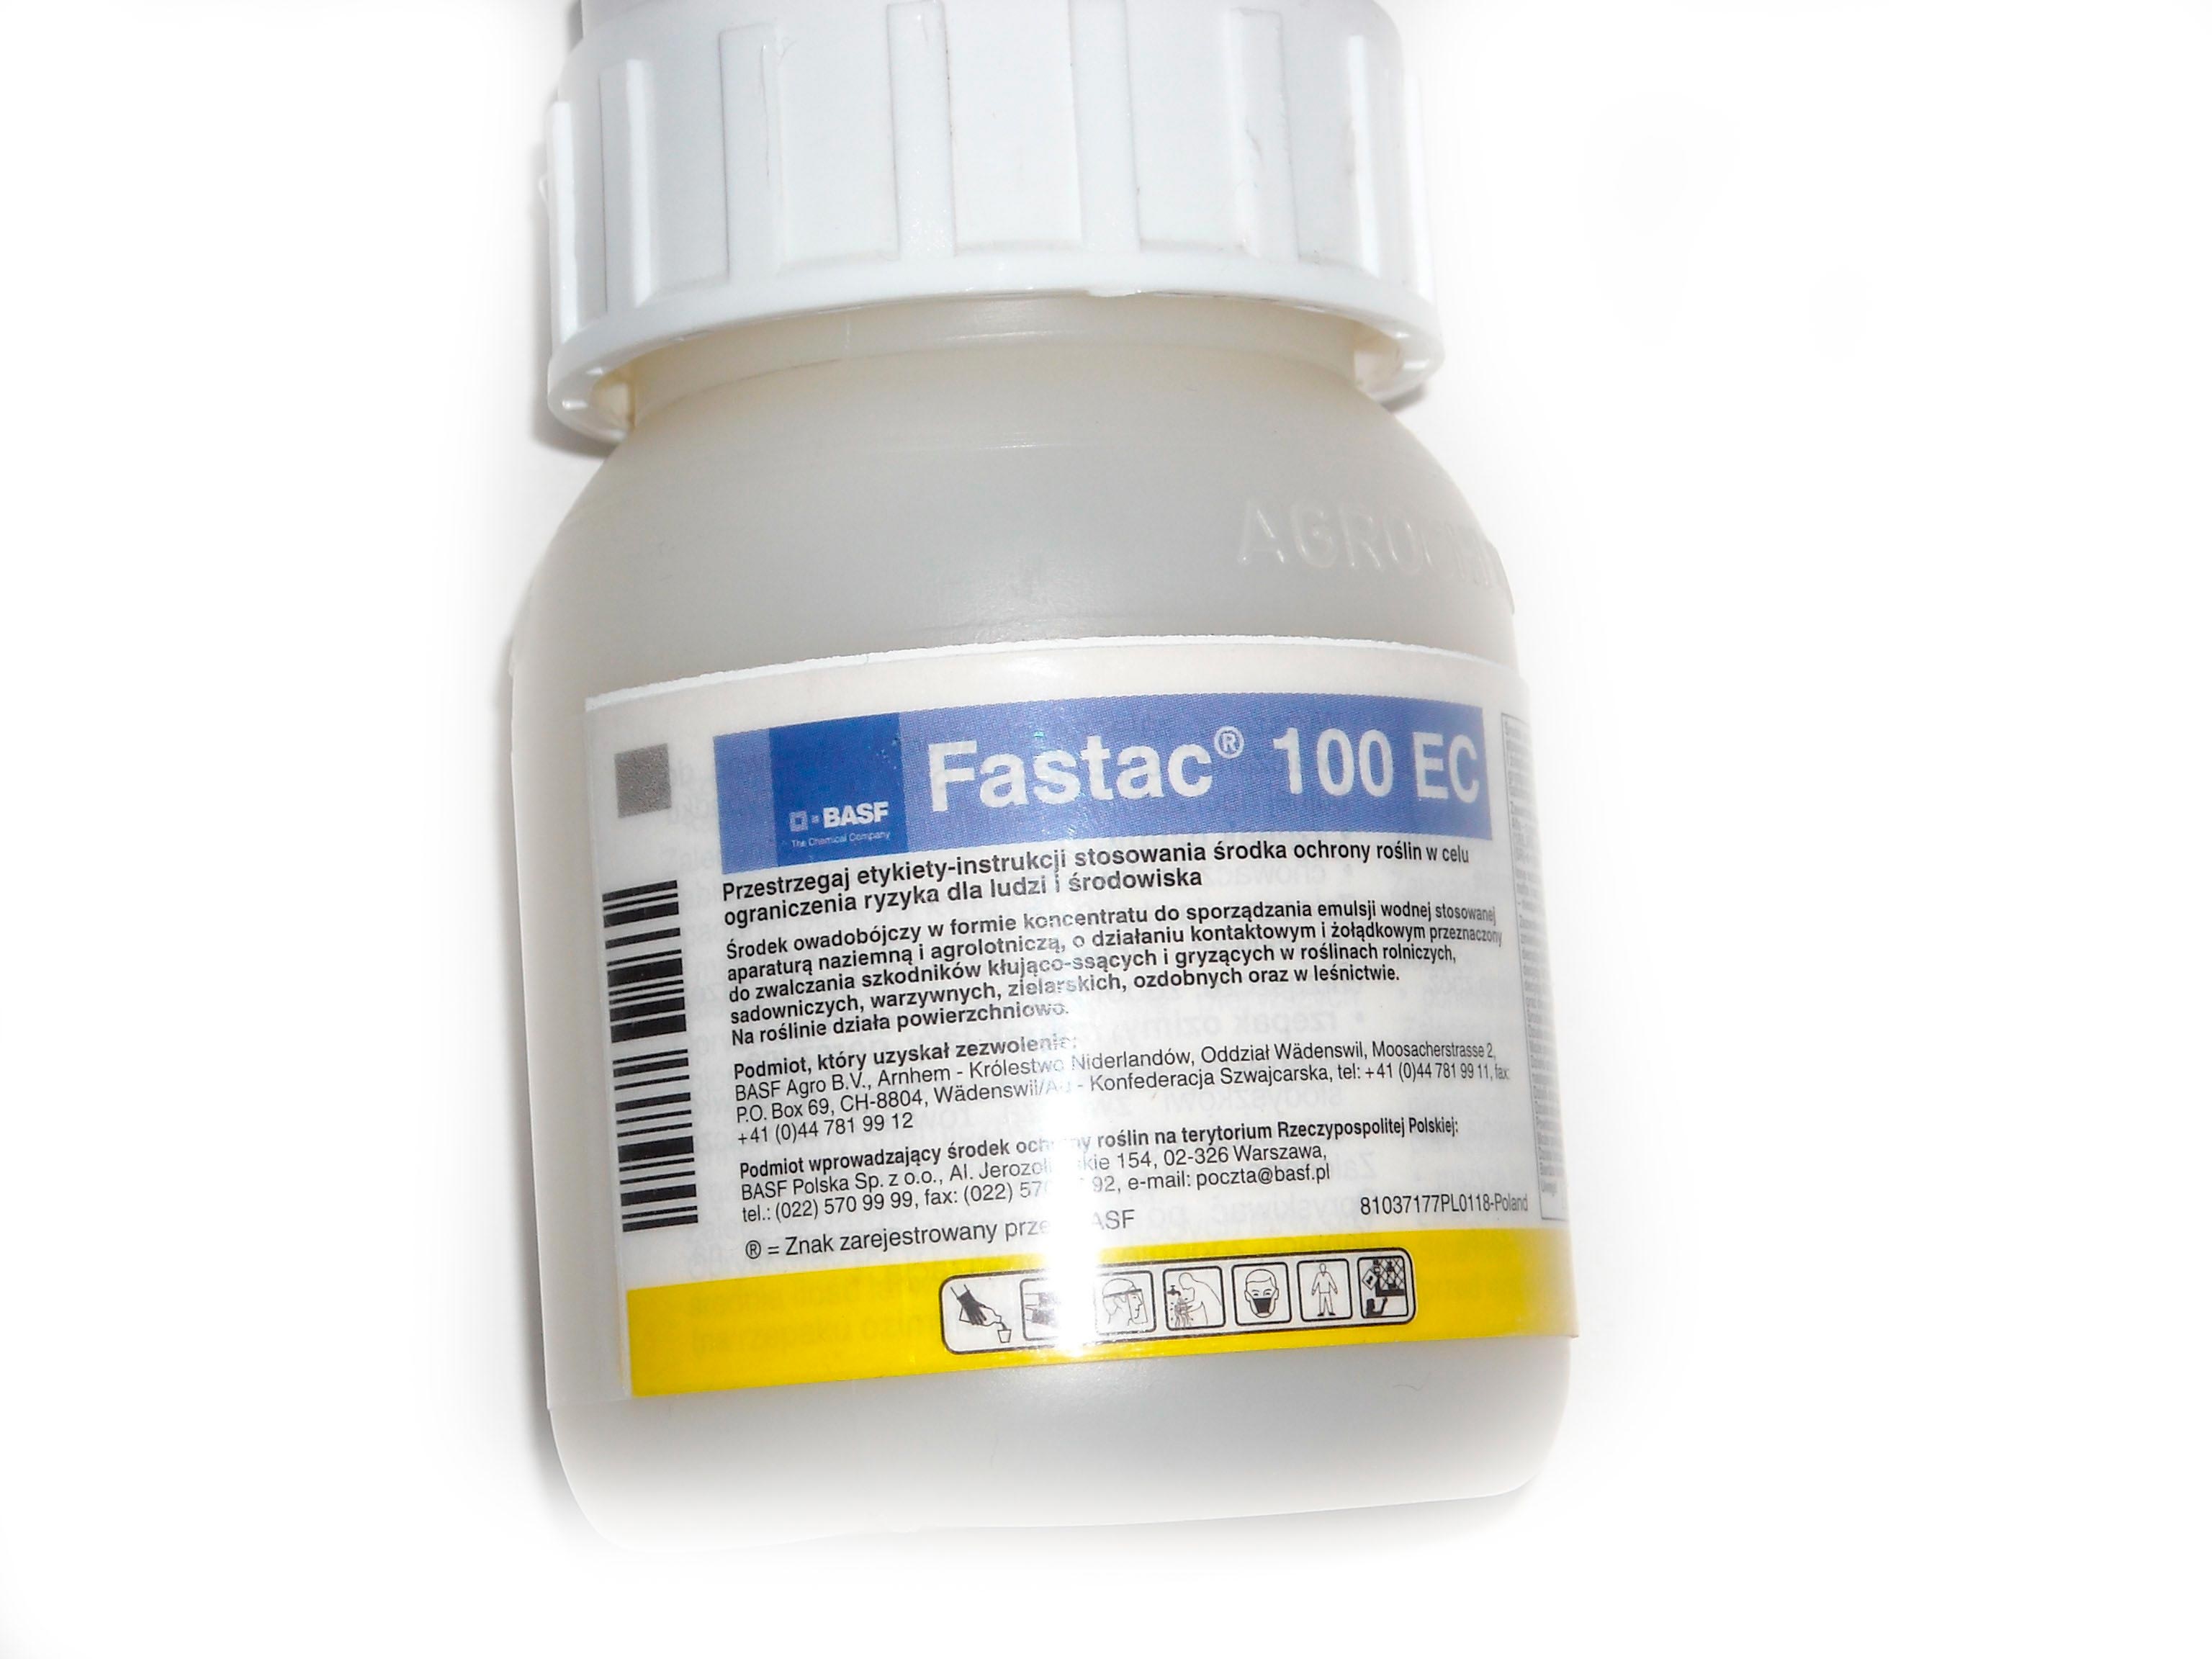 FASTAC - немецкий препарат против тли